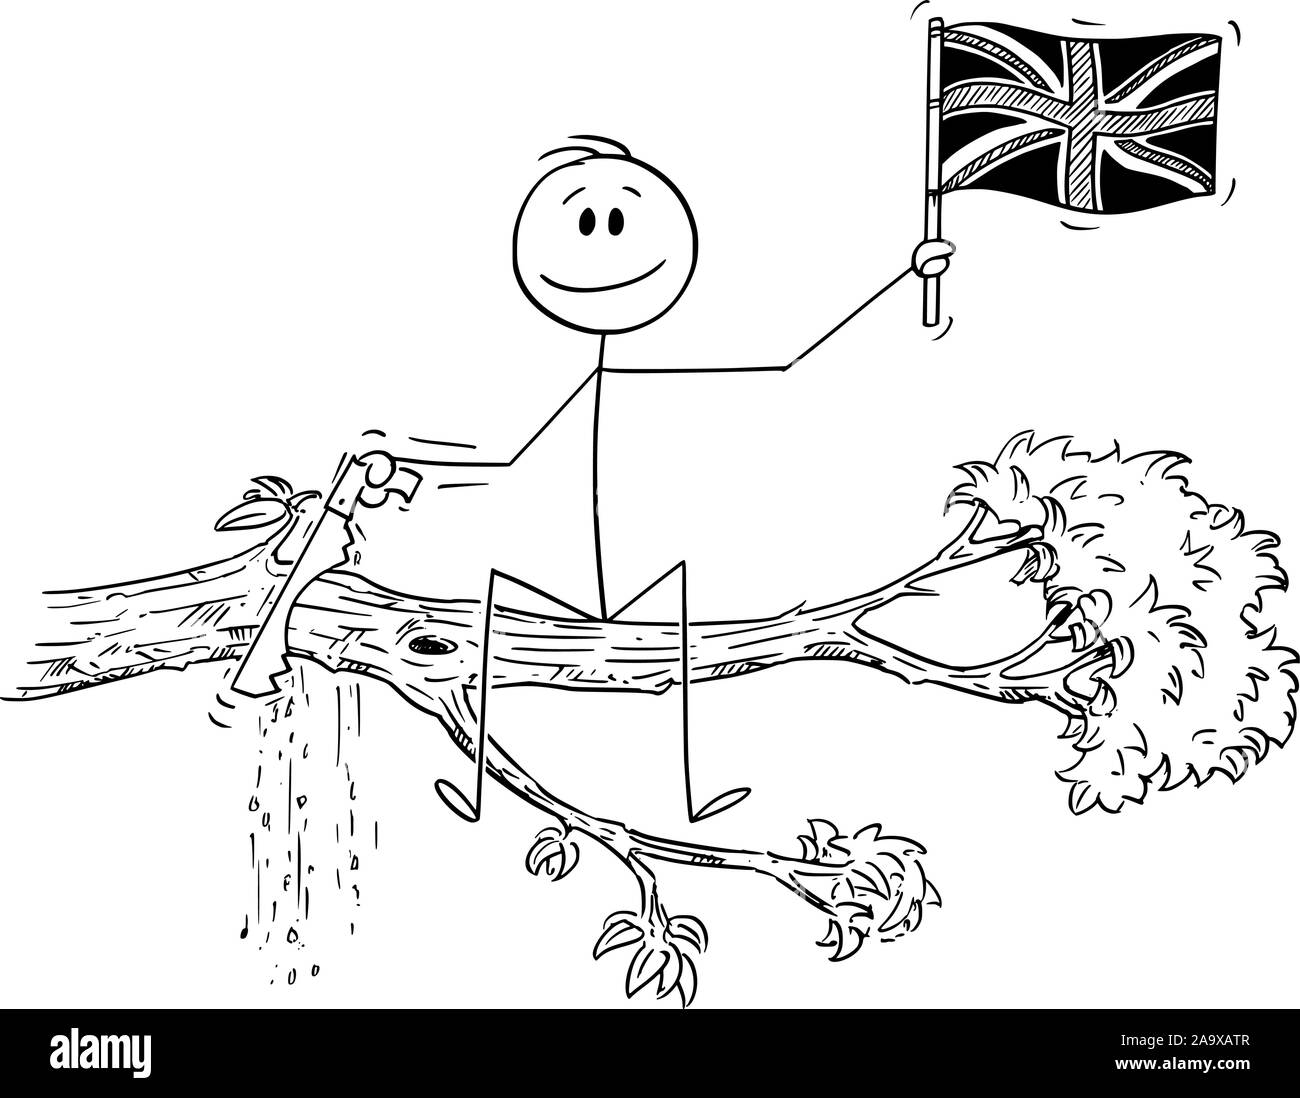 Vektor cartoon Strichmännchen Zeichnen konzeptionelle Darstellung der Mann winkte die die Flagge des Vereinigten Königreichs, und Schneiden mit sah den Ast ab, auf dem er sitzt. Stock Vektor